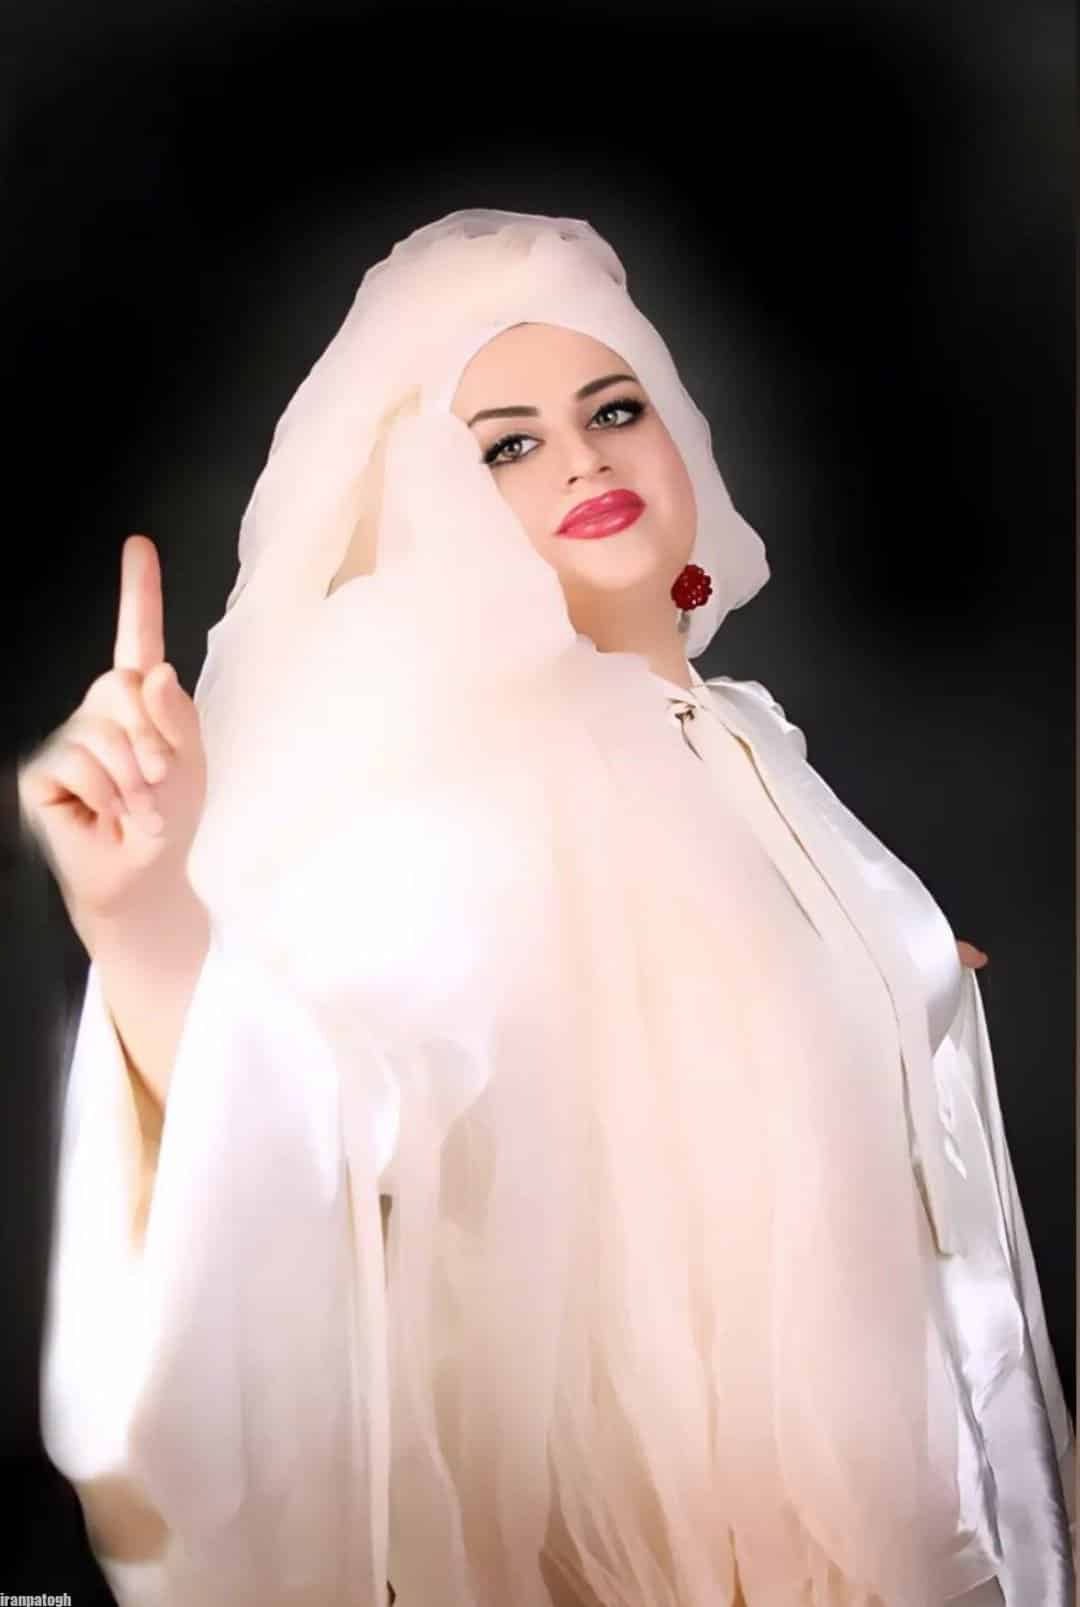 زیباترین دختر ایران در سالی گذشت چه کسی بود؟